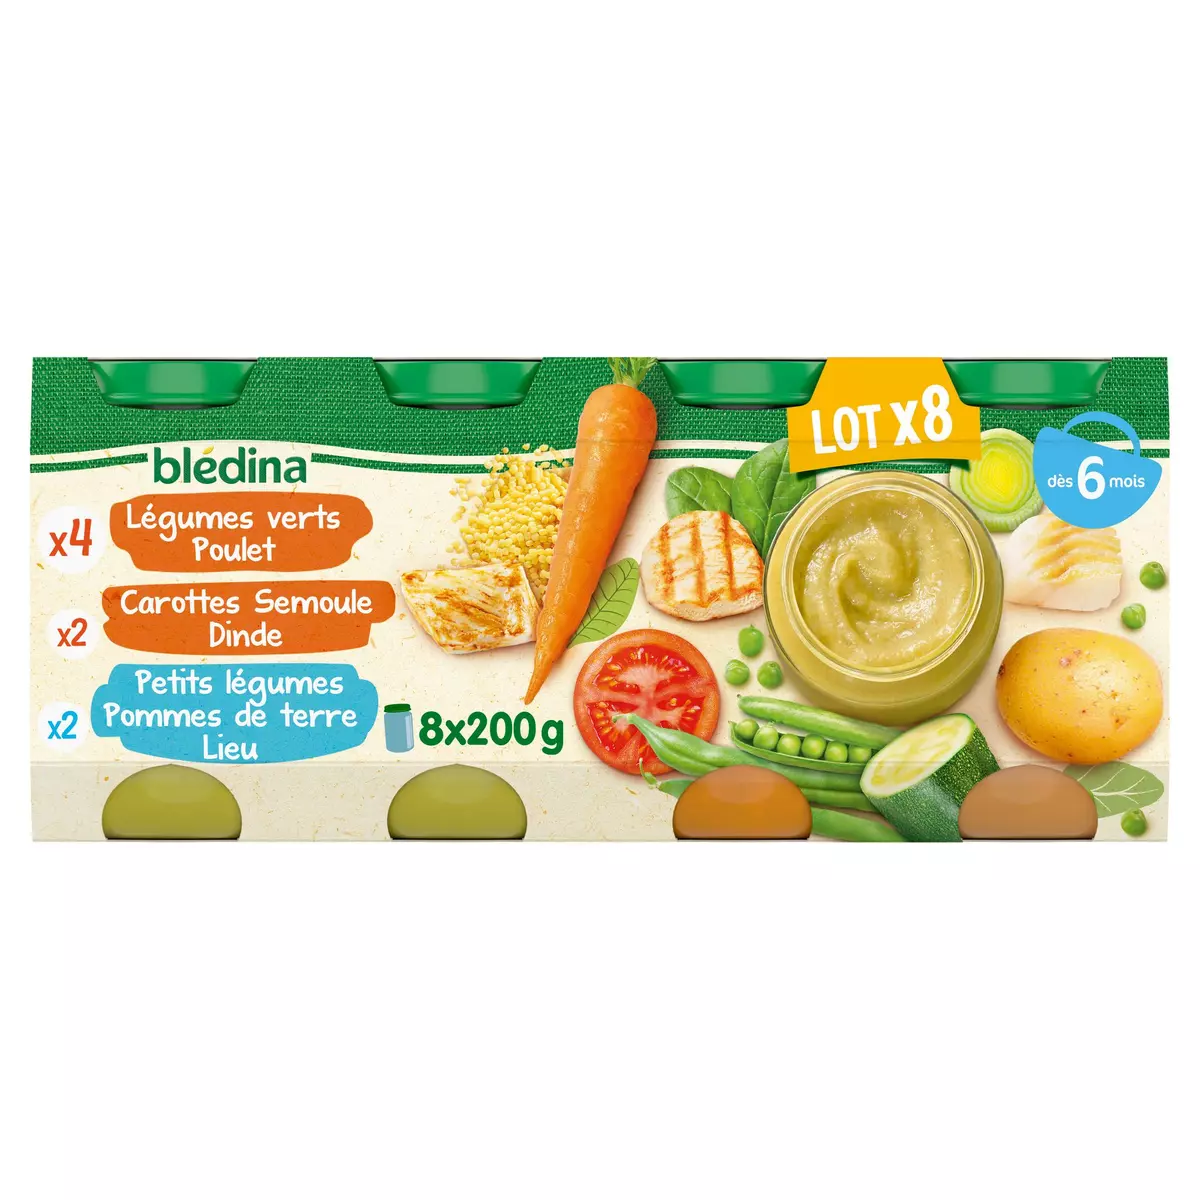 Petit pot bébé dès 6 mois carottes patates douces Bledina 2x200g sur